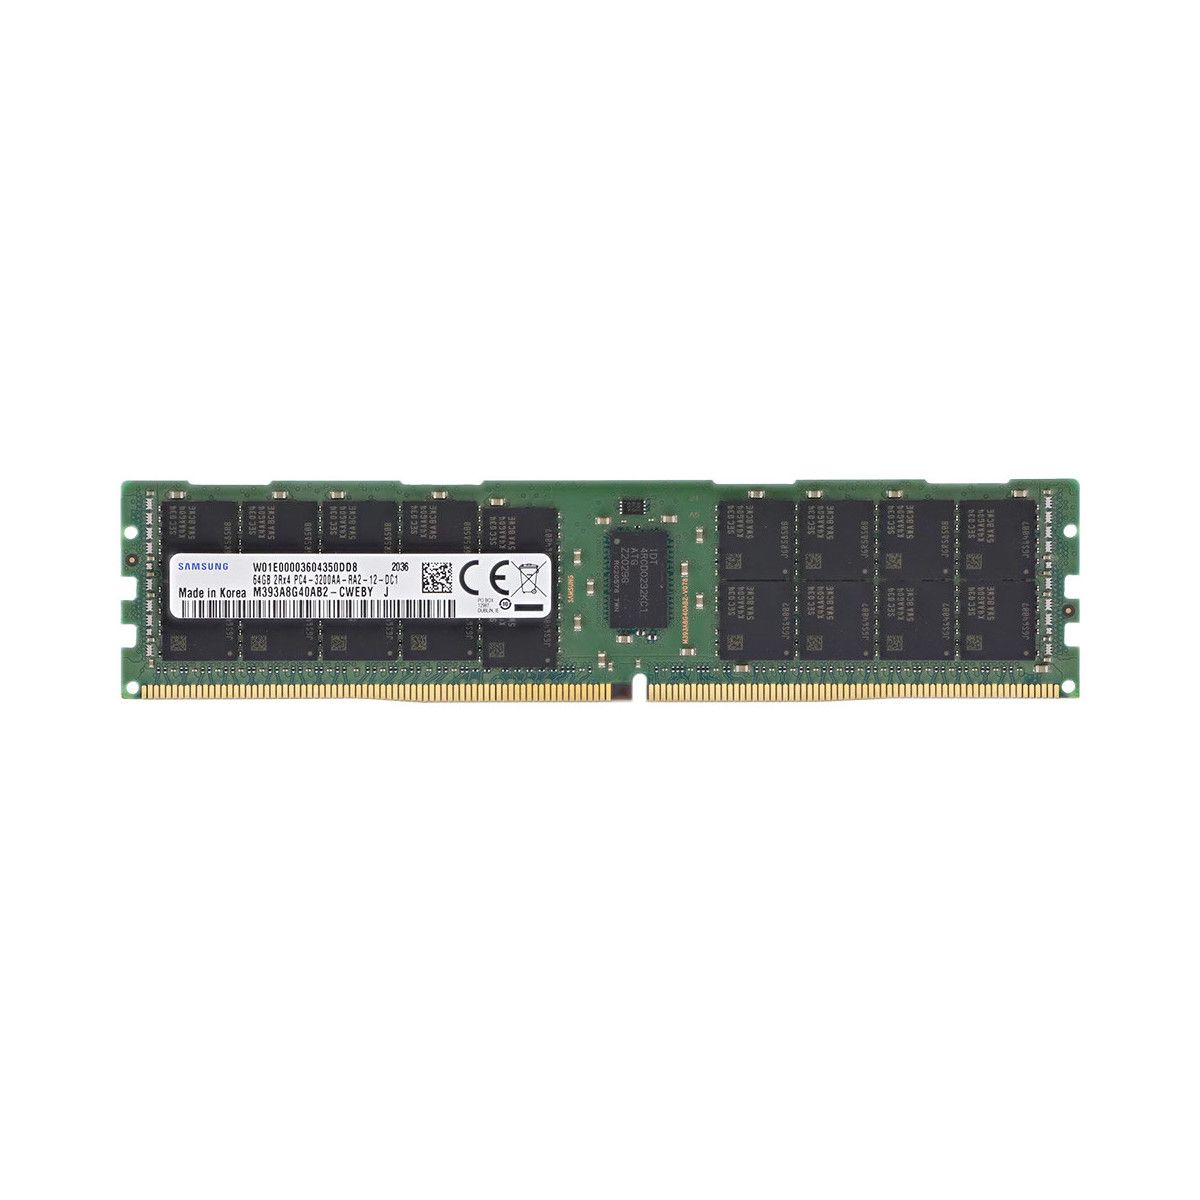 P06035-B21-MS - Memstar 1x 64GB DDR4-3200 RDIMM PC4-25600R - Memstar Memorie OEM compatibilă 1 - Memstar 